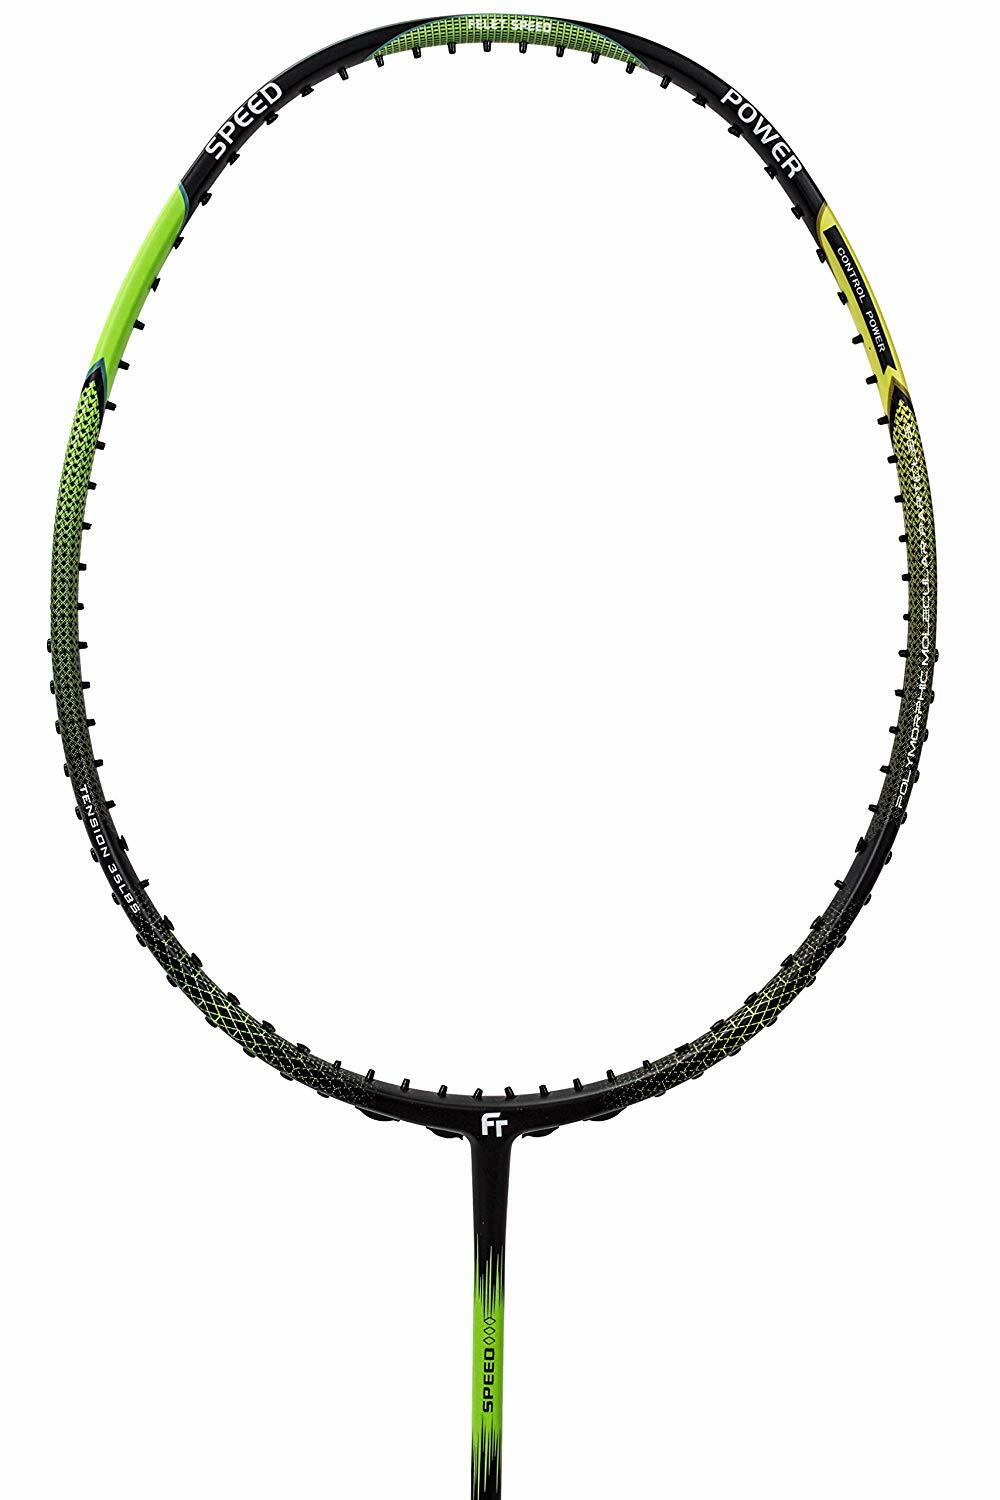 Fleet Felet Speed S-528 Badminton Racket